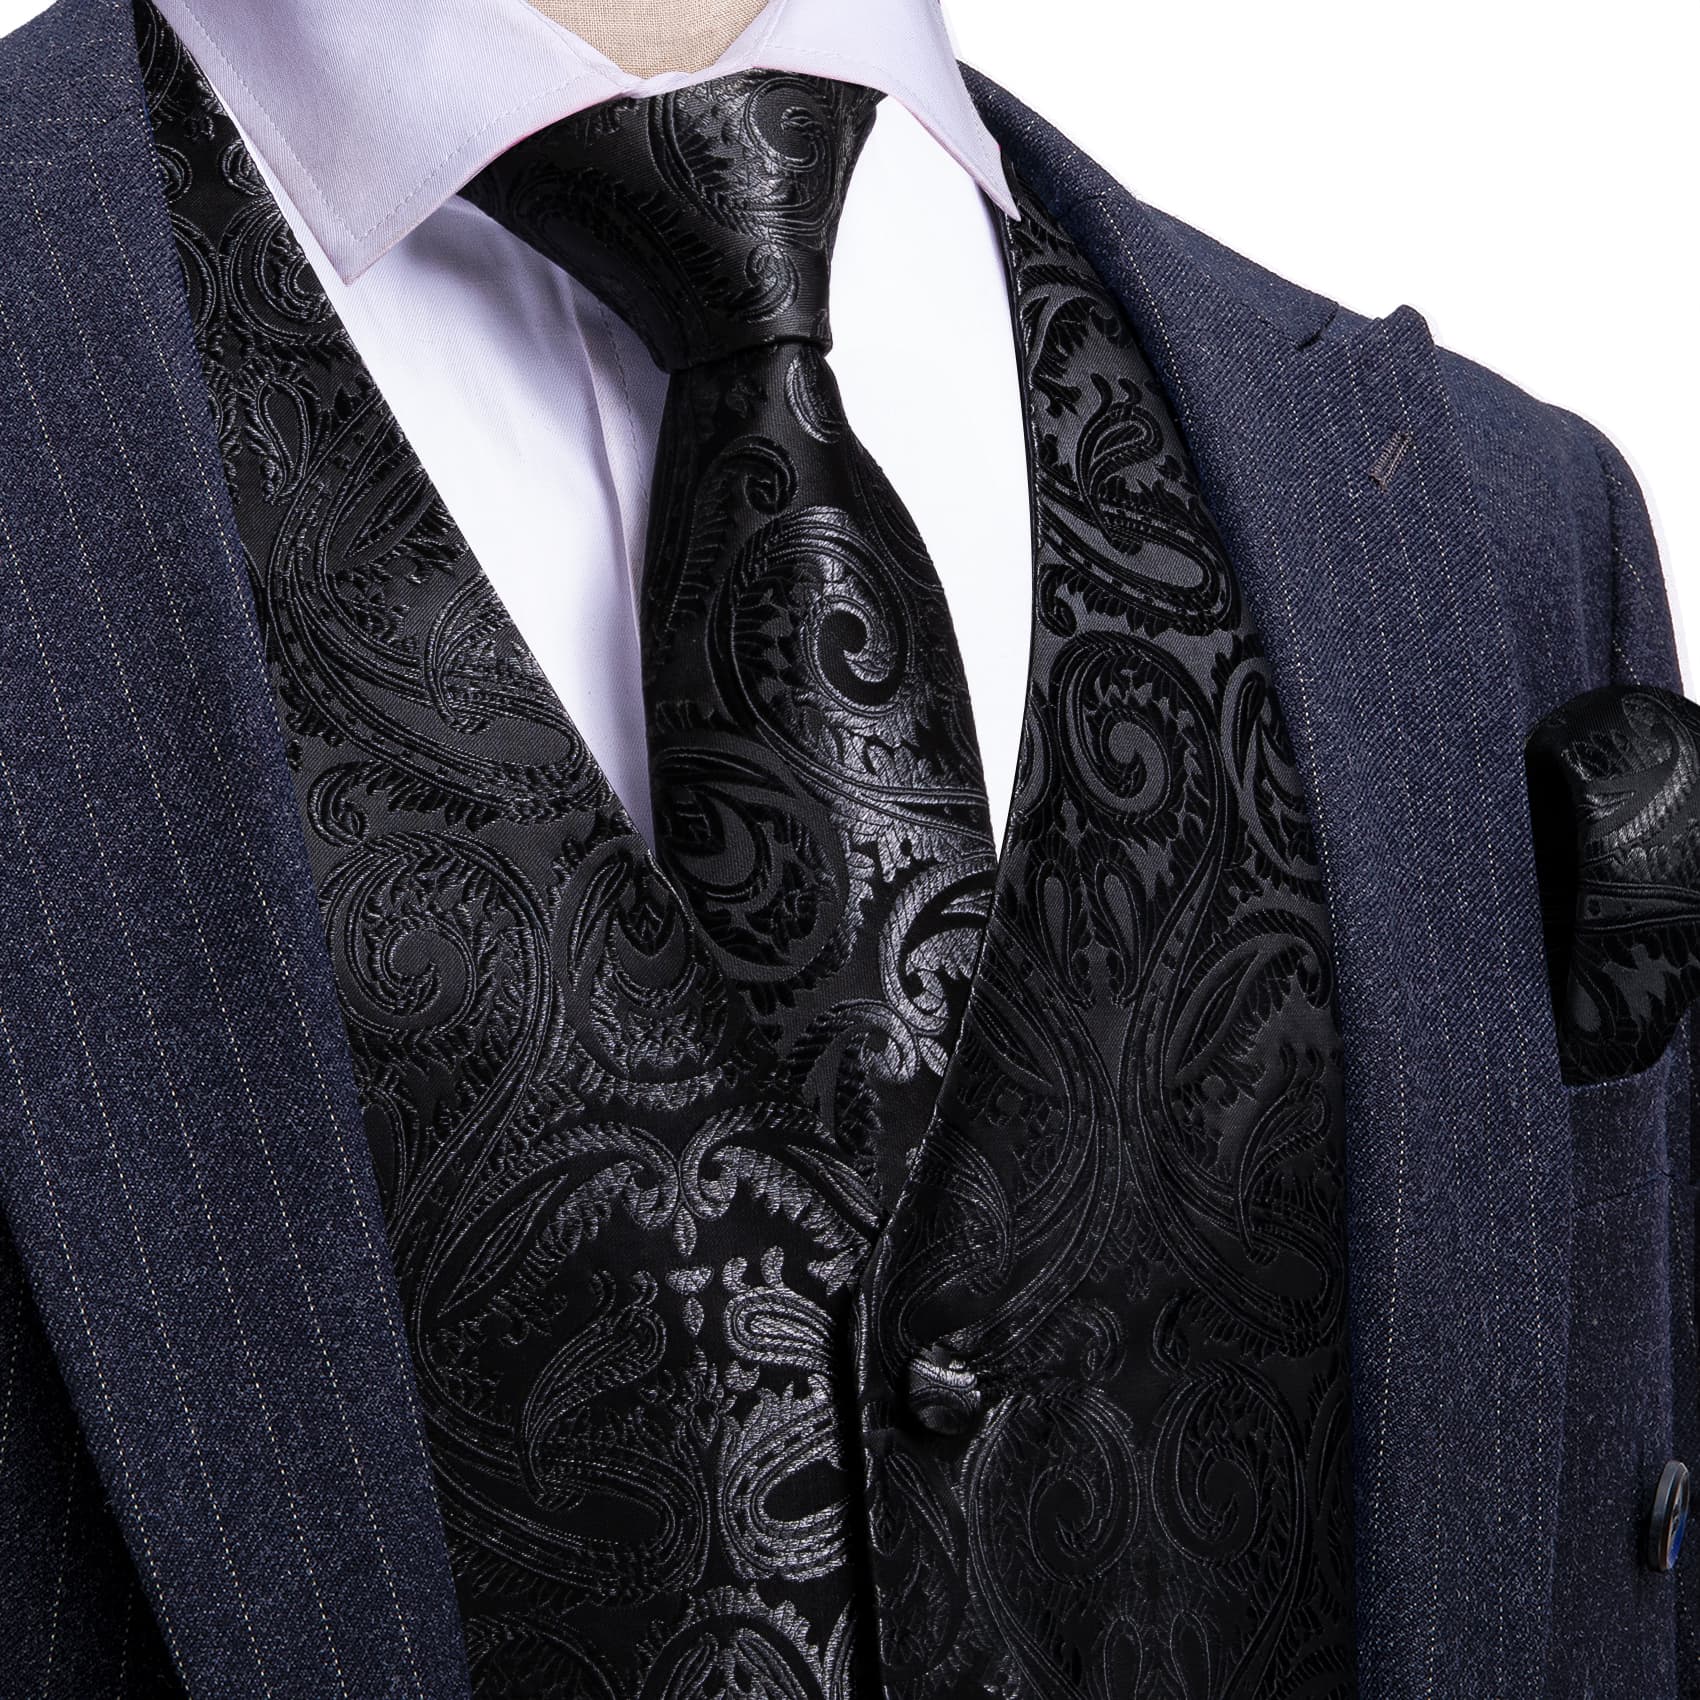 Dark Black waistcoat white shirt blue suit blazer for men 